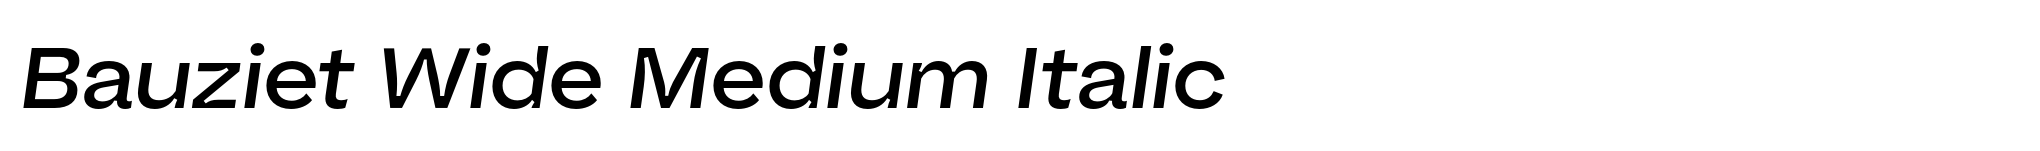 Bauziet Wide Medium Italic image